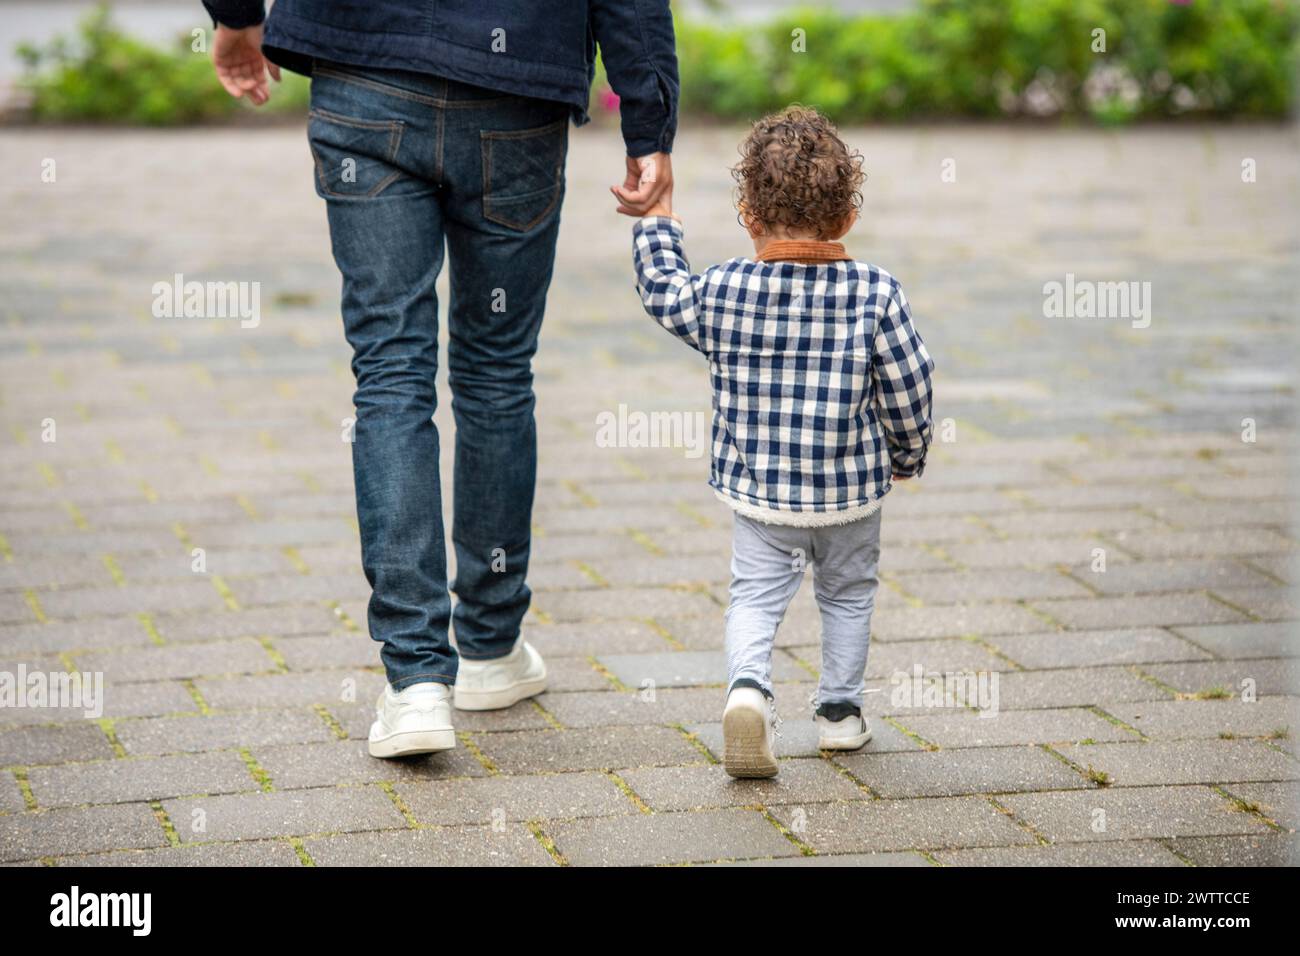 Un moment tendre où un parent marche main dans la main avec son jeune enfant. Banque D'Images